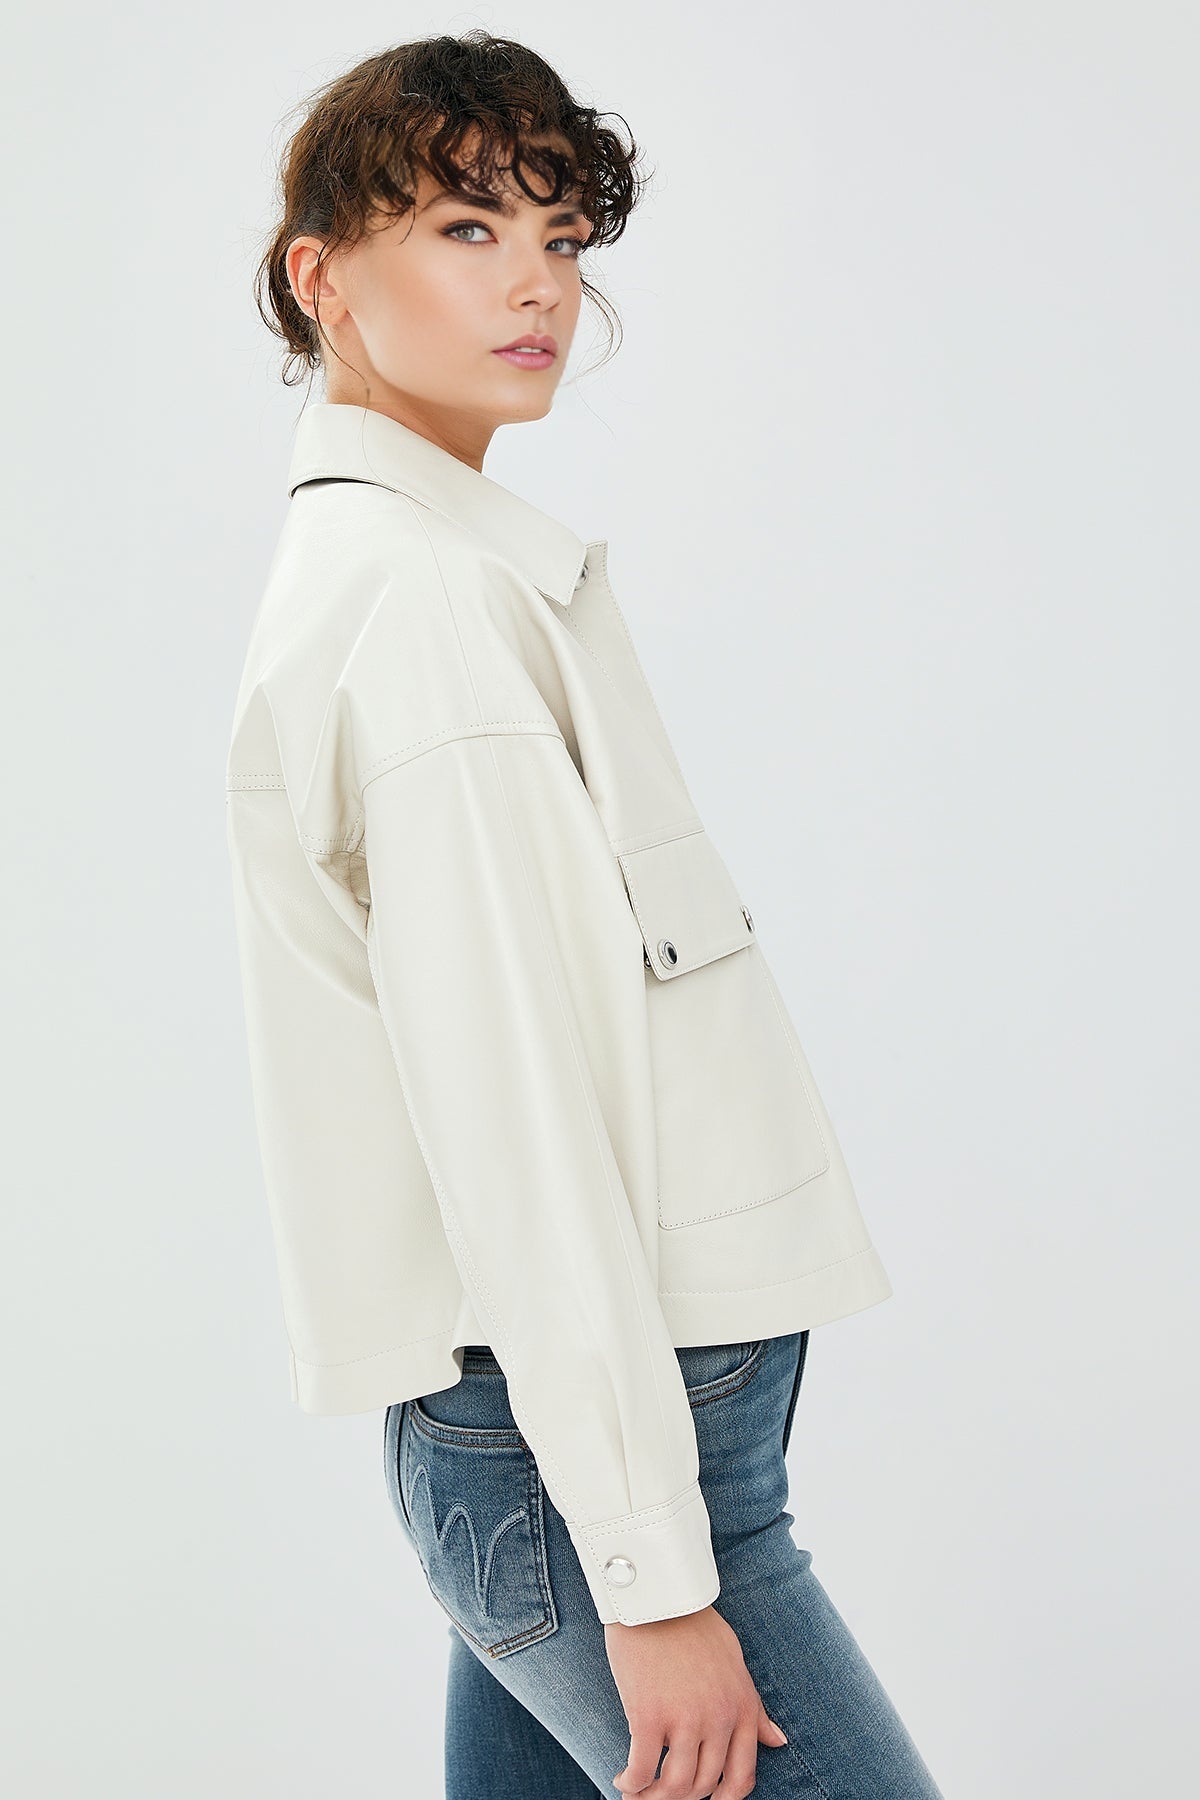 Dora Women's Ecru Oversize Short Leather Jacket